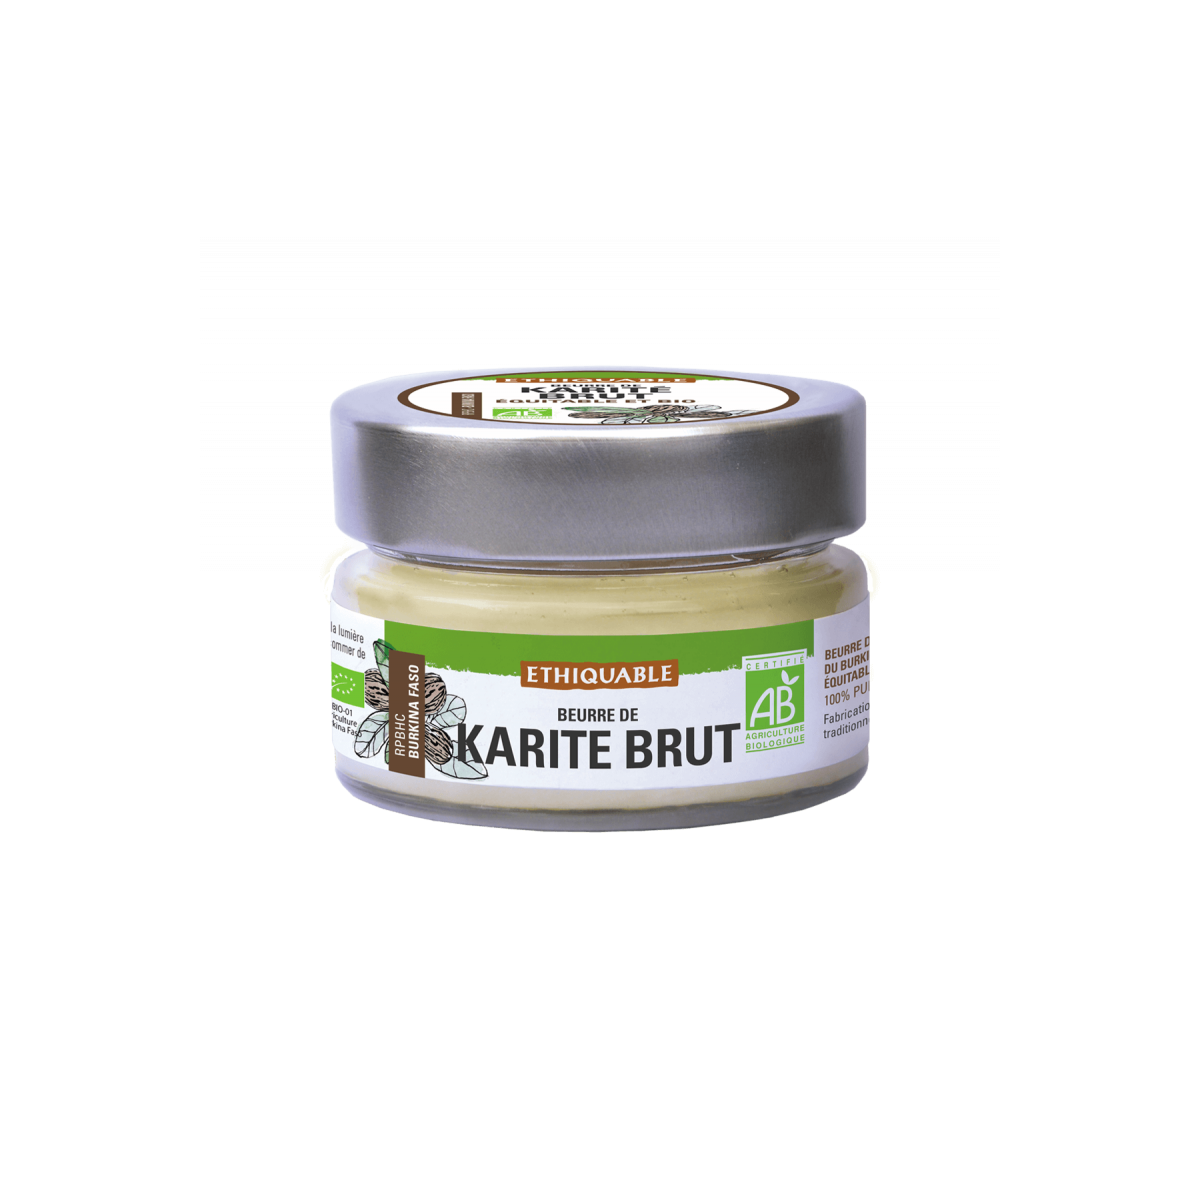 Beurre de Karité brut 340g